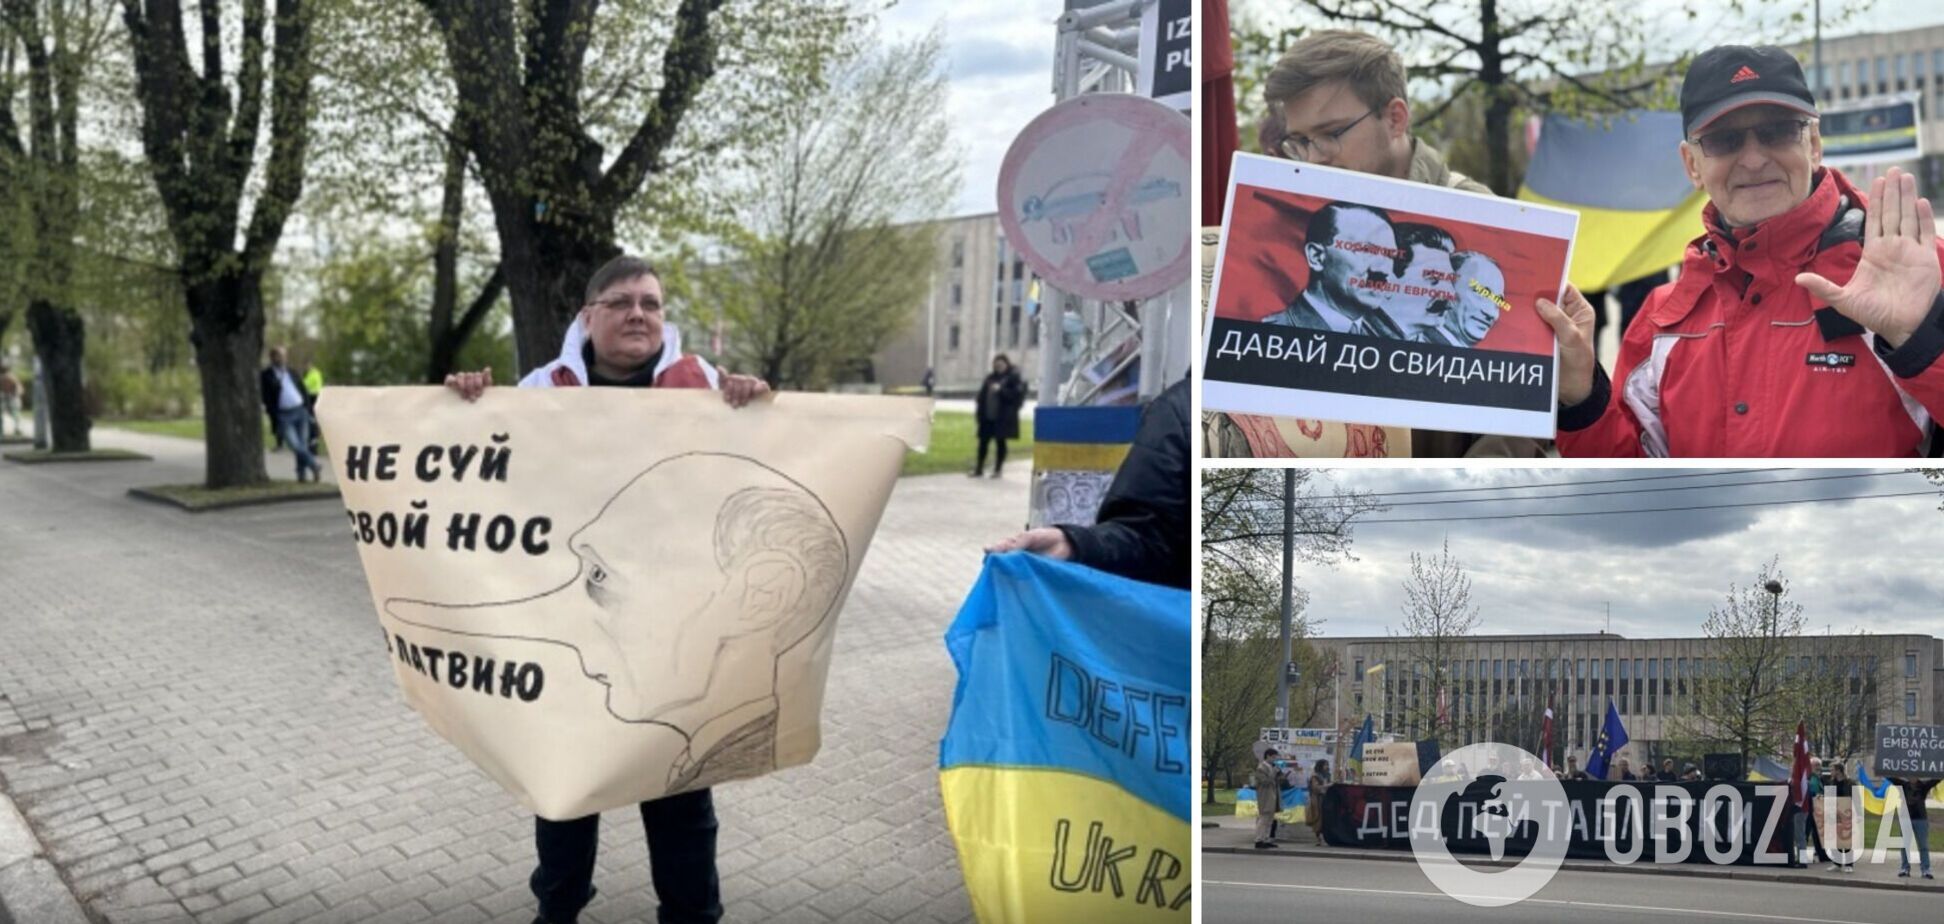 Русскоязычные жители Риги призвали Путина не совать нос в Латвию. Фото